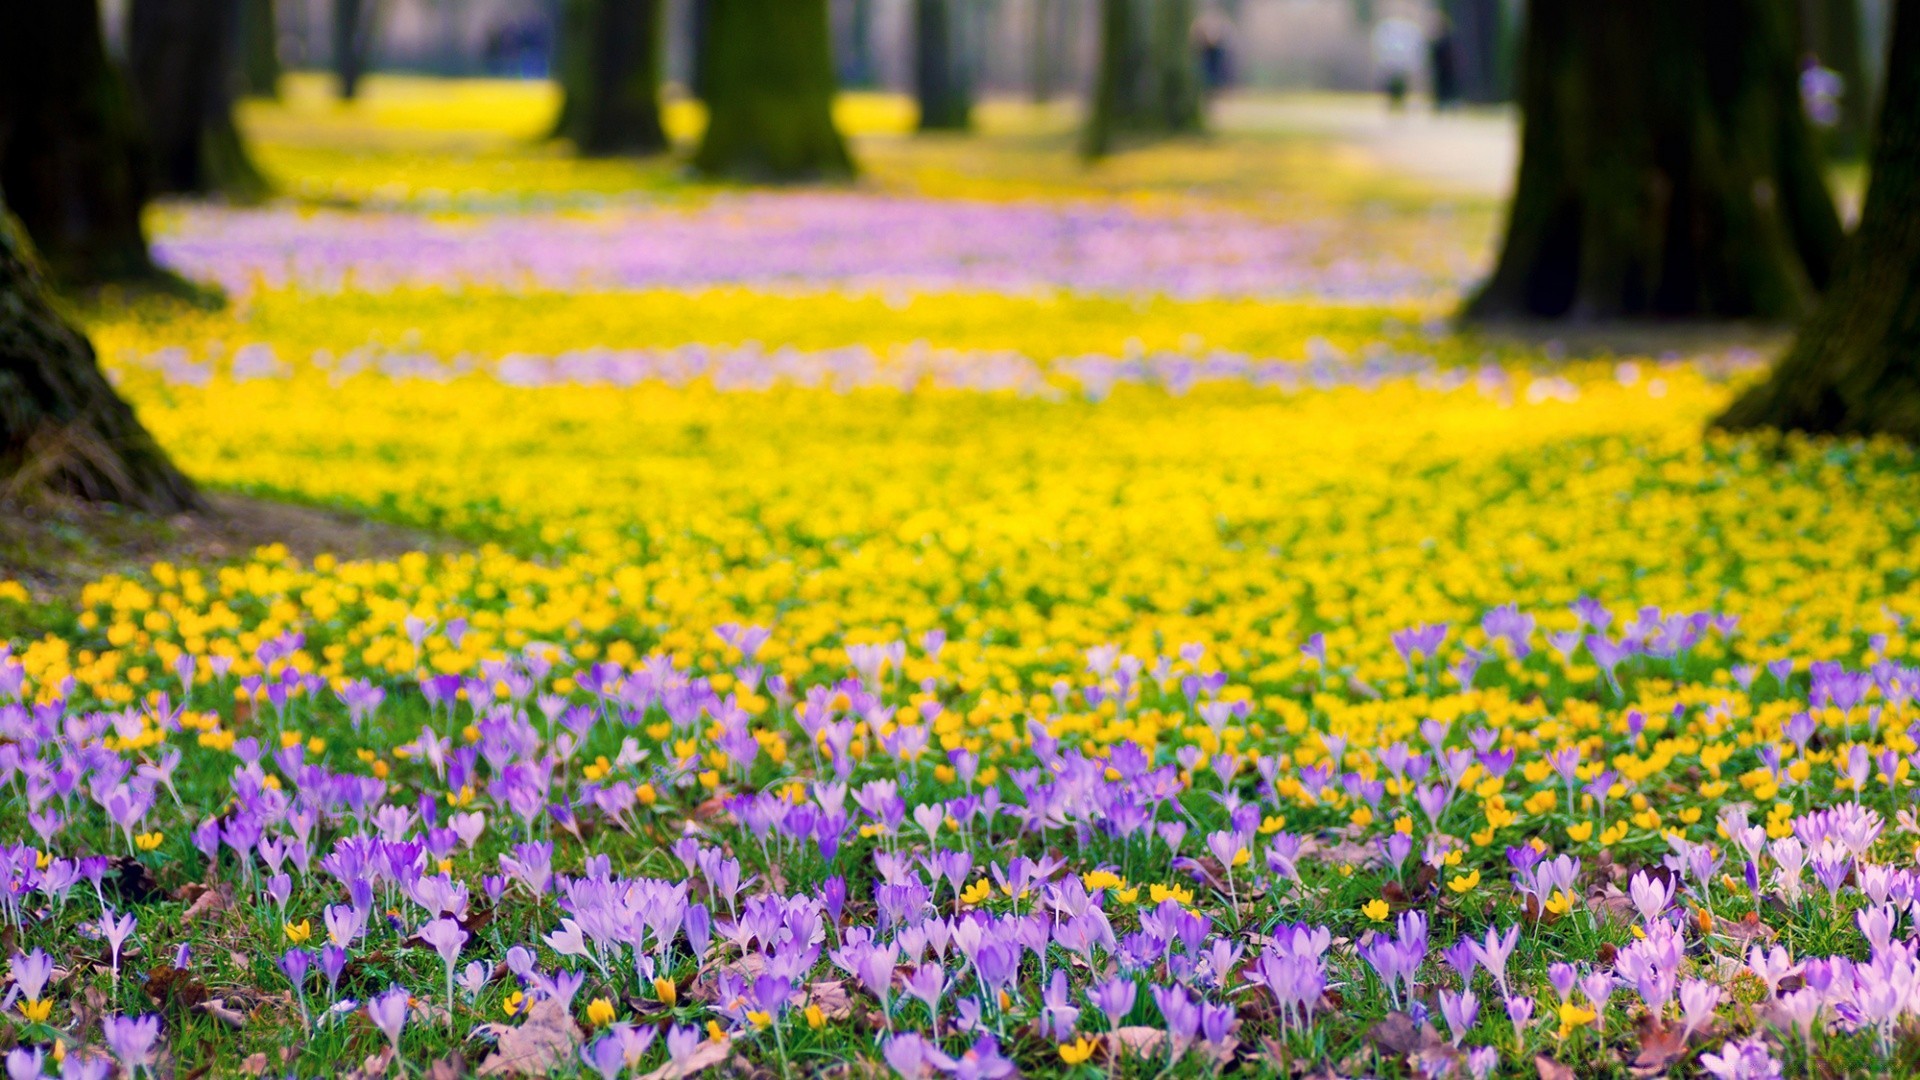 весна цветок природа флора поле сенокос сад блюминг цветочные лето трава рост на открытом воздухе сезон лепесток сельских цвет лист яркий весна